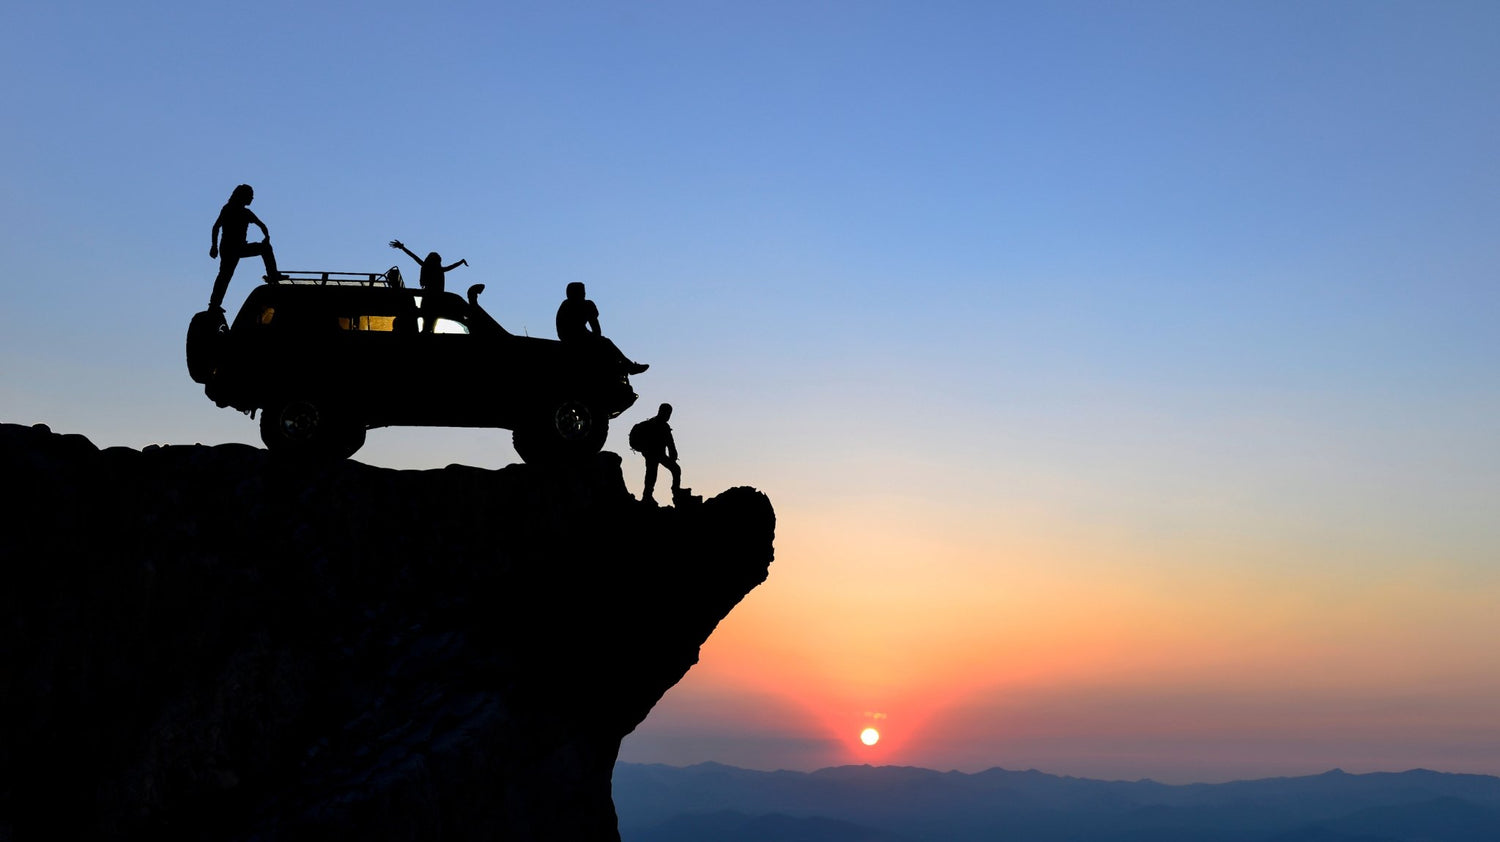 Vehicle on cliff edge at sunset